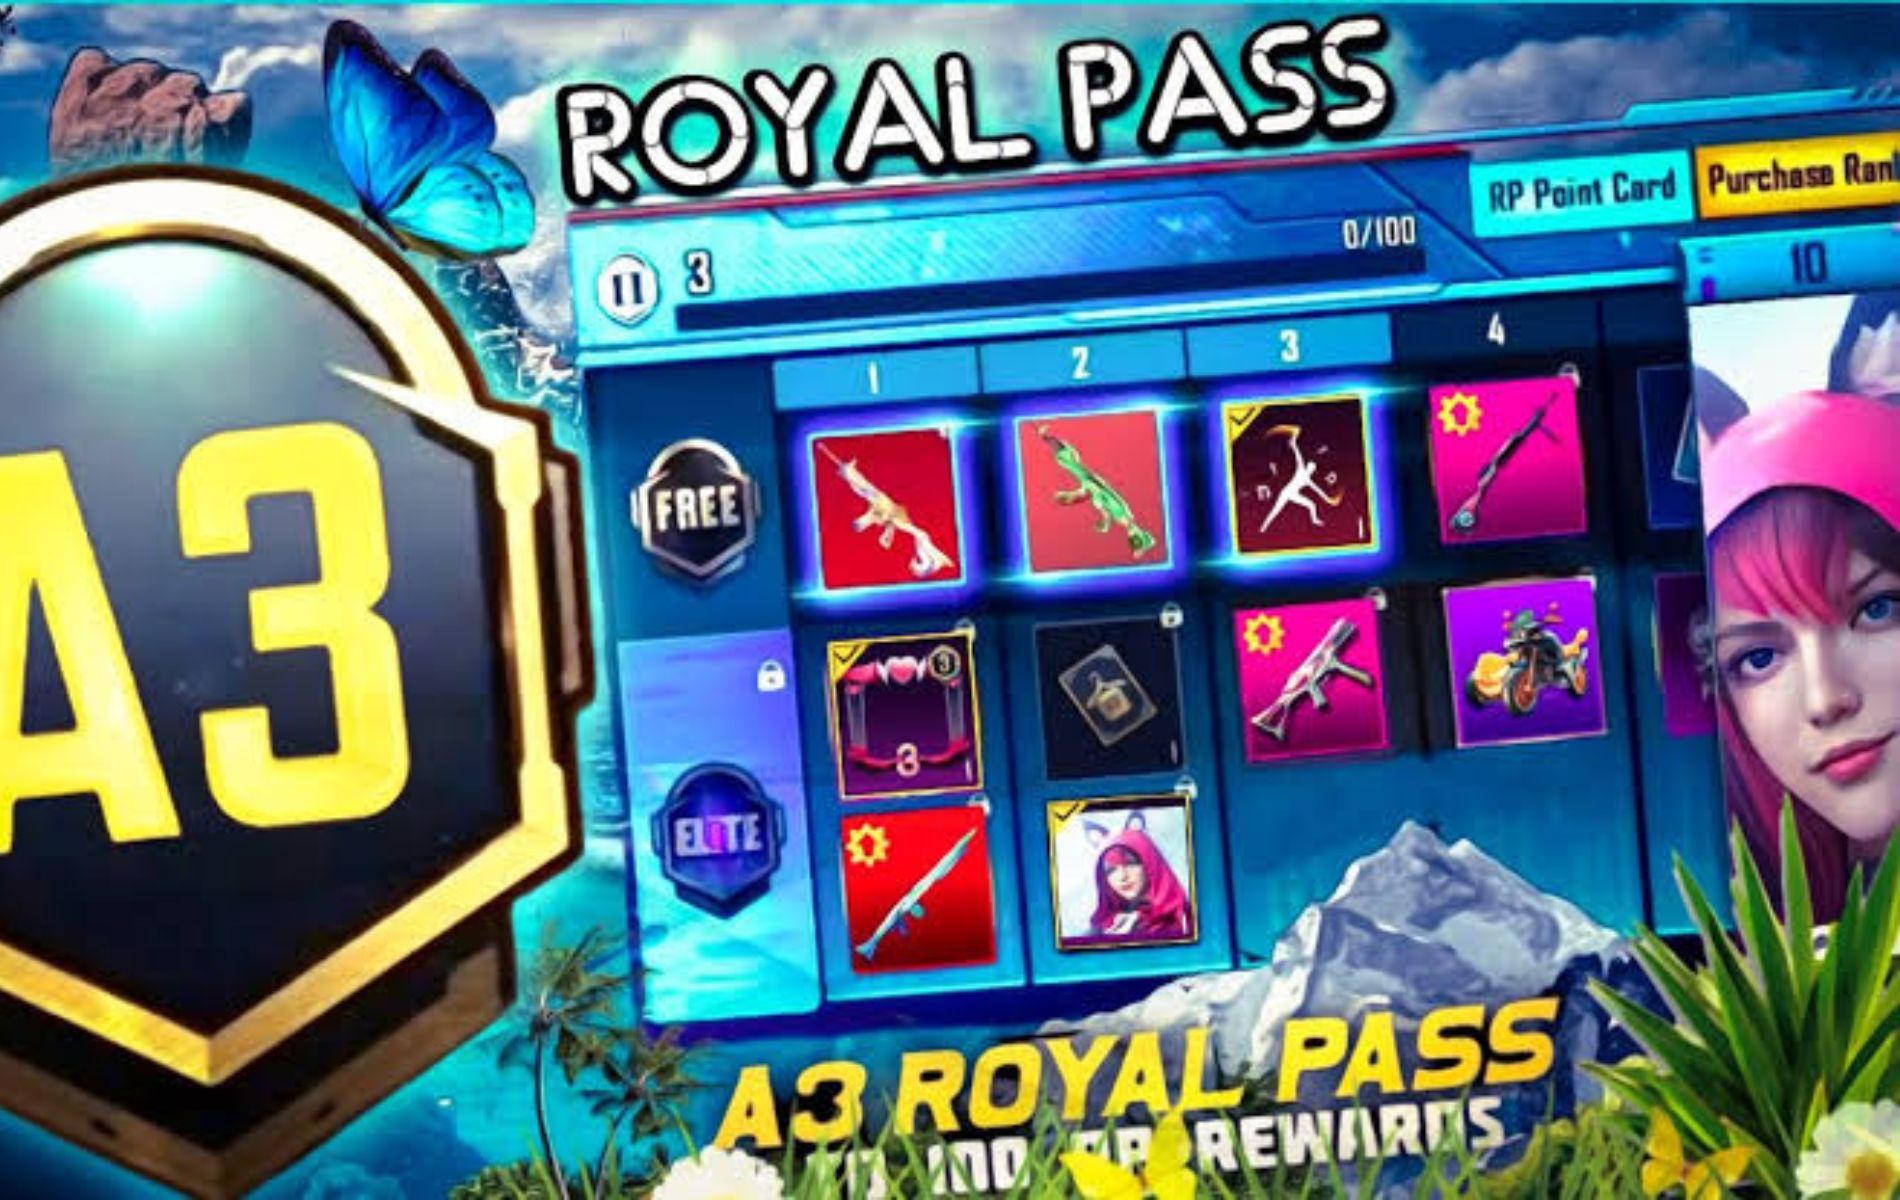 Tampilan menu Royale Pass Ace 3.